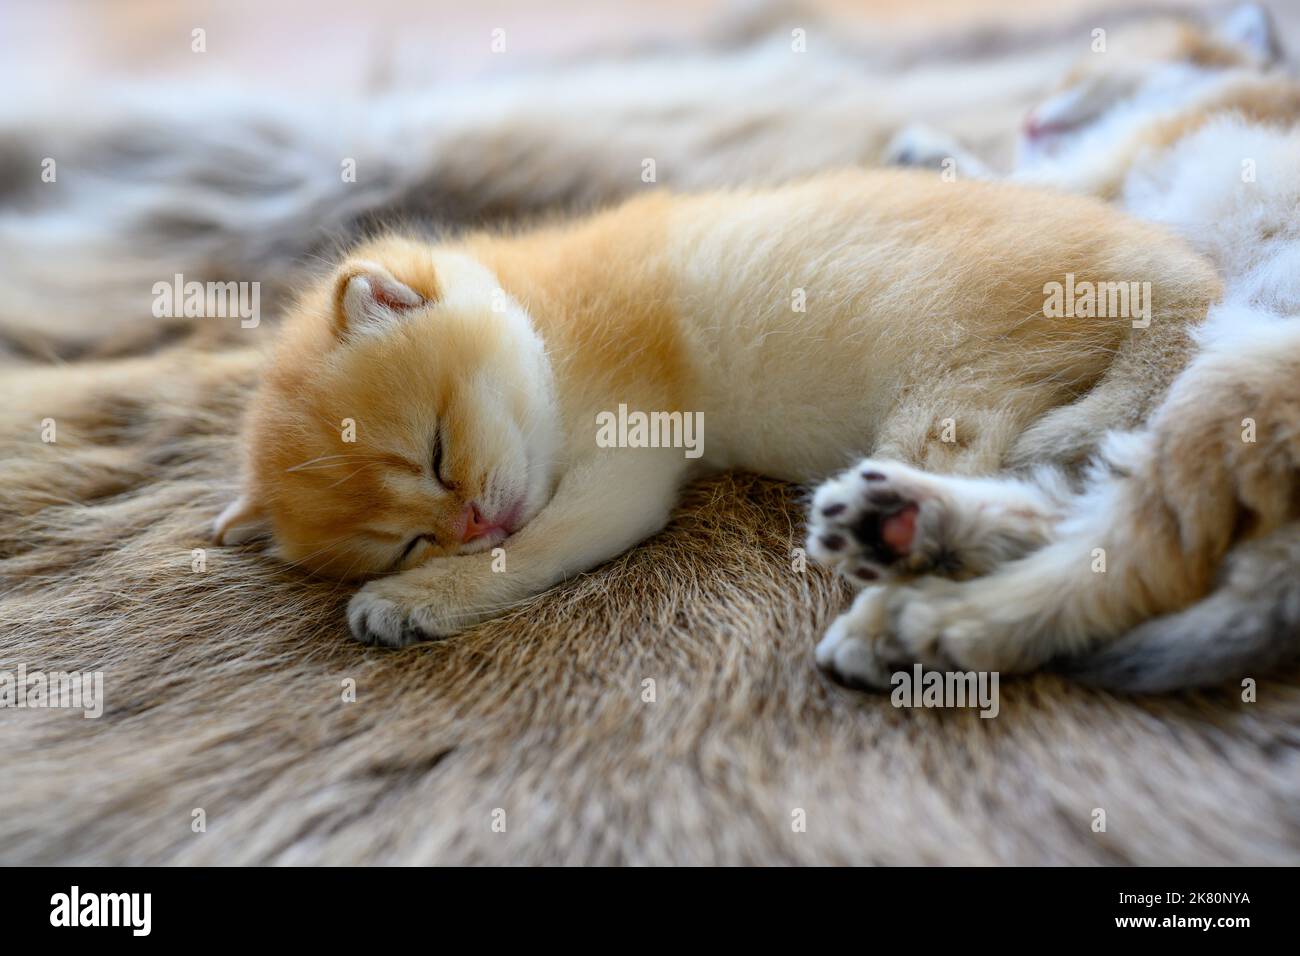 Gattino che dorme su un tappeto di pelliccia marrone, gatto Shorthair britannico dorato, puro pedigree. Bella e carina. Dormi bene sui tappeti soffici, top e. Foto Stock